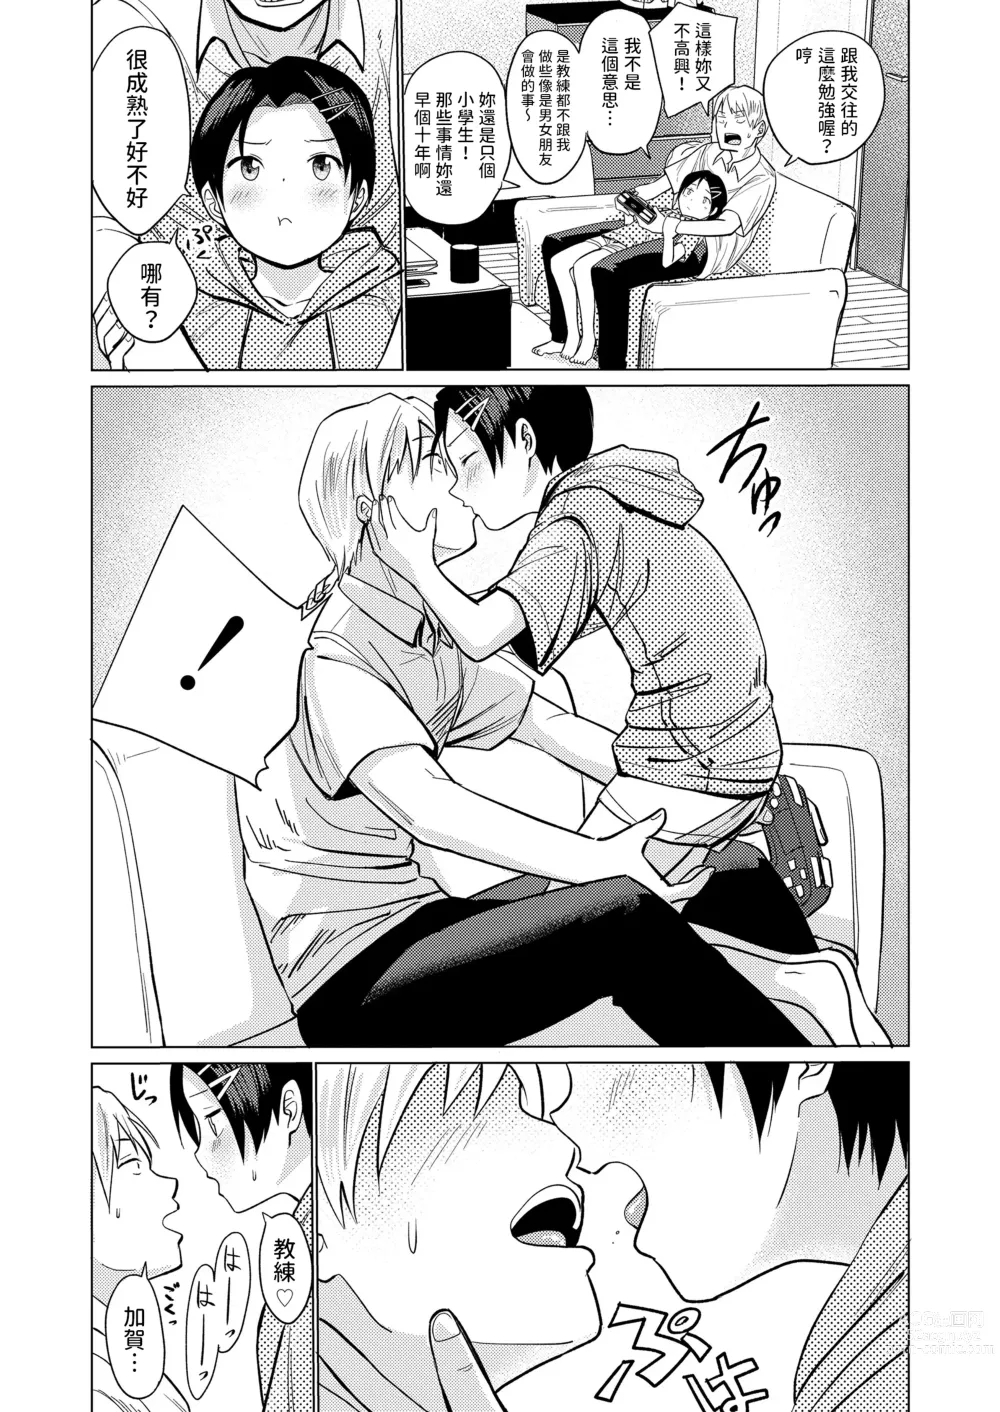 Page 4 of manga Hat Trick